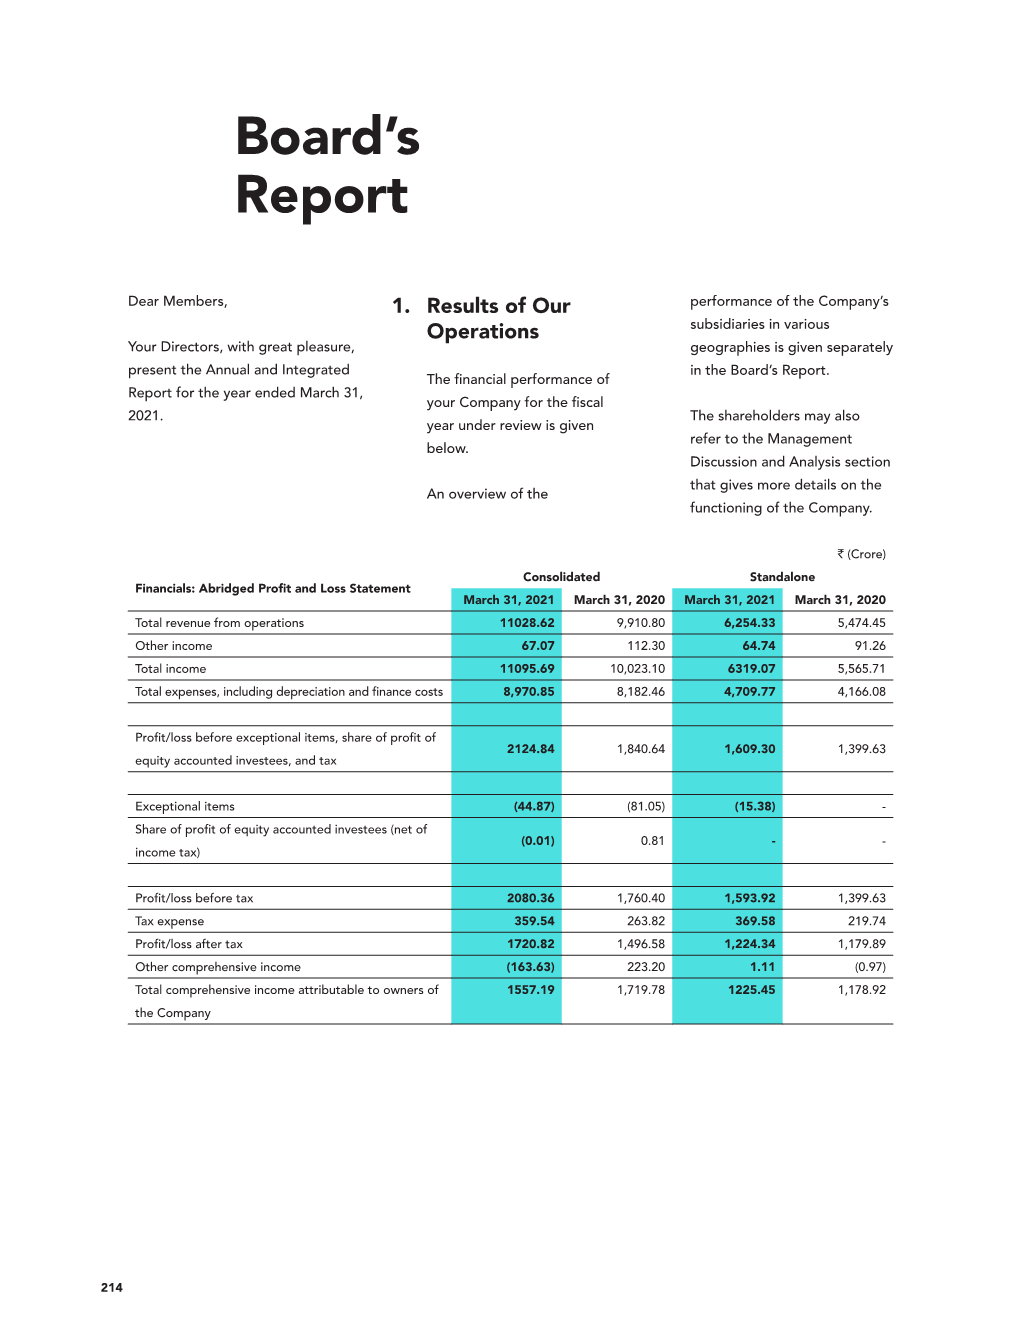 Statutory Reports